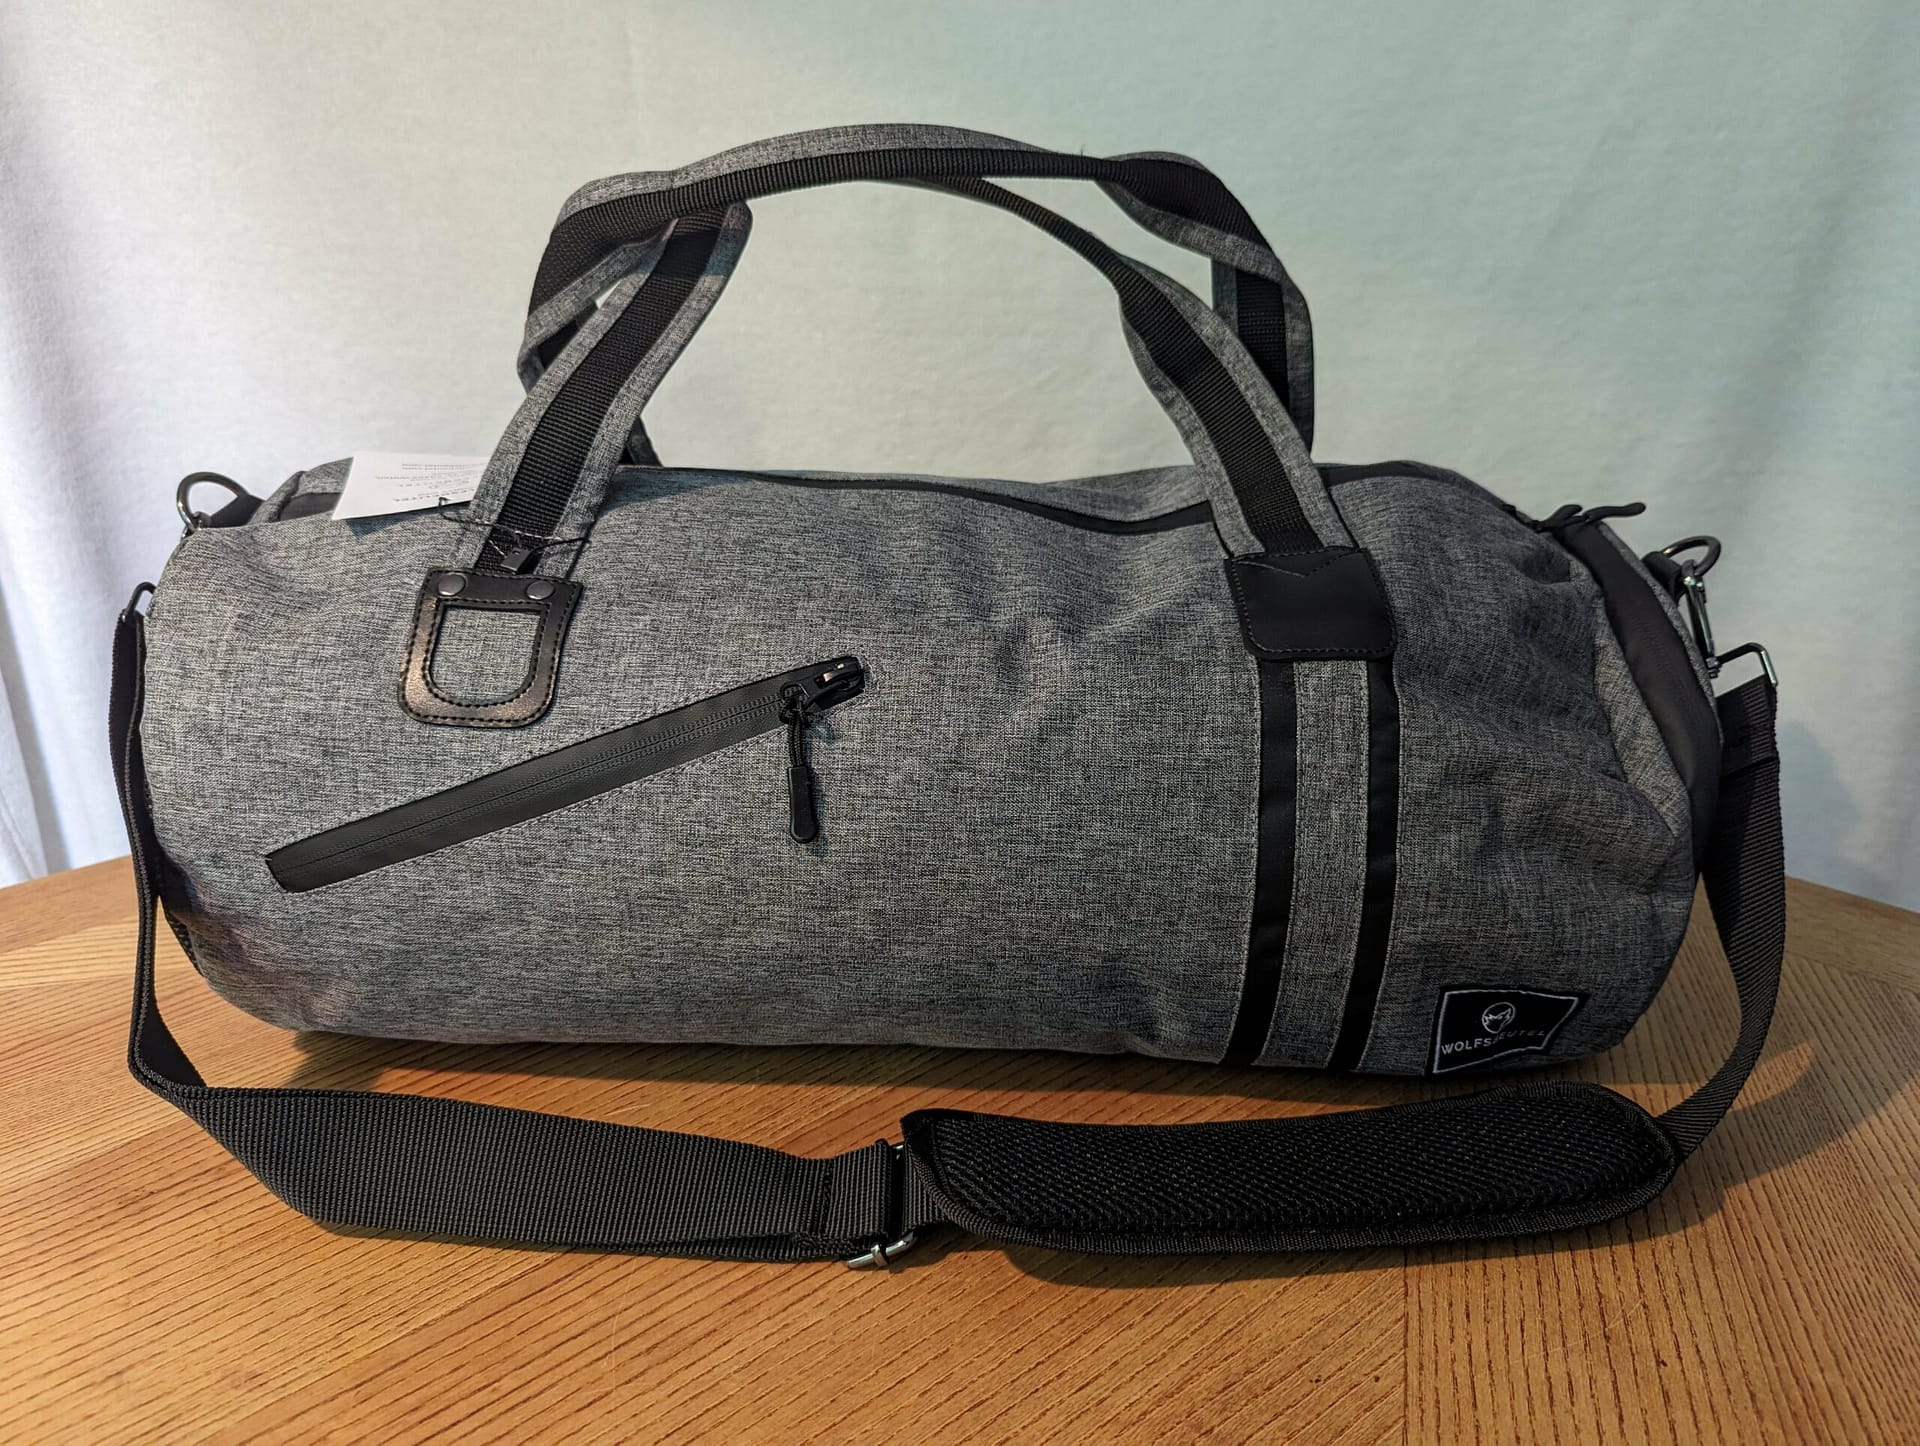 Sporttasche & Reisetasche für Damen und Herren mit Schuhfach und Nassfach im Test von Wolfsbeutel